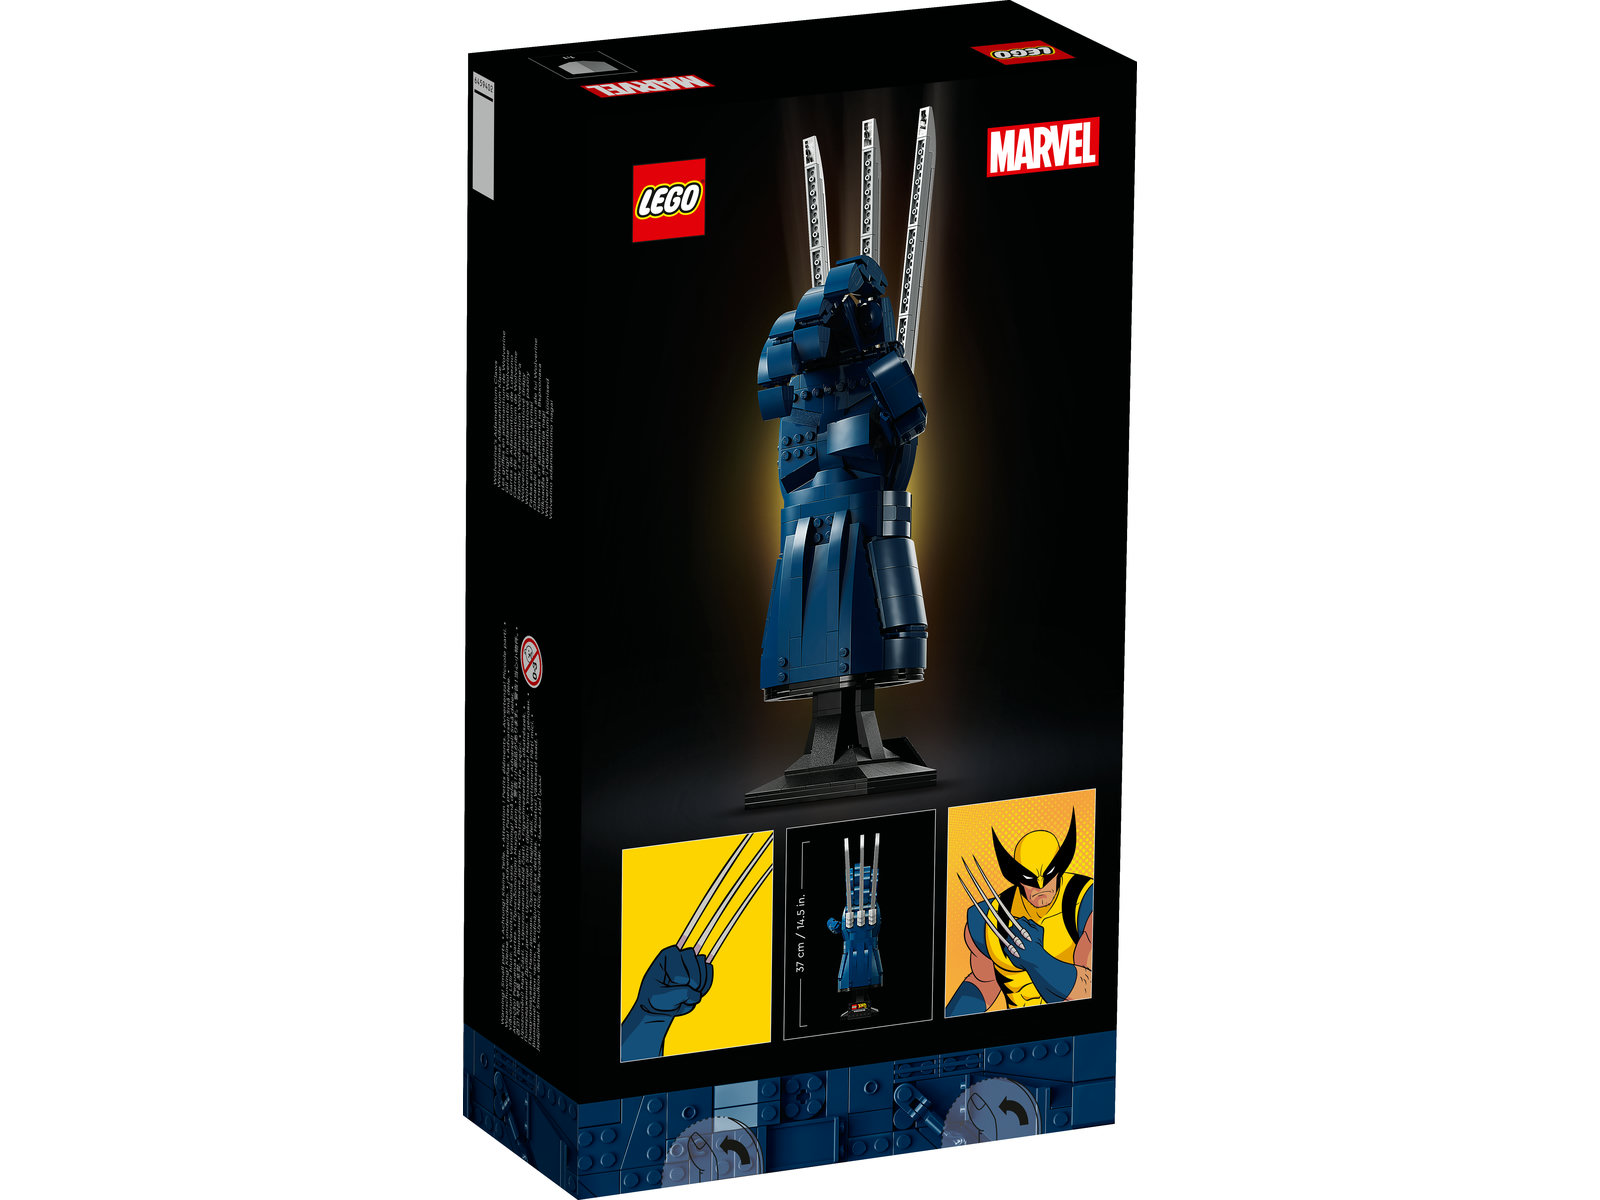 LEGO® Marvel 76250 - Wolverines Adamantium-Klaue